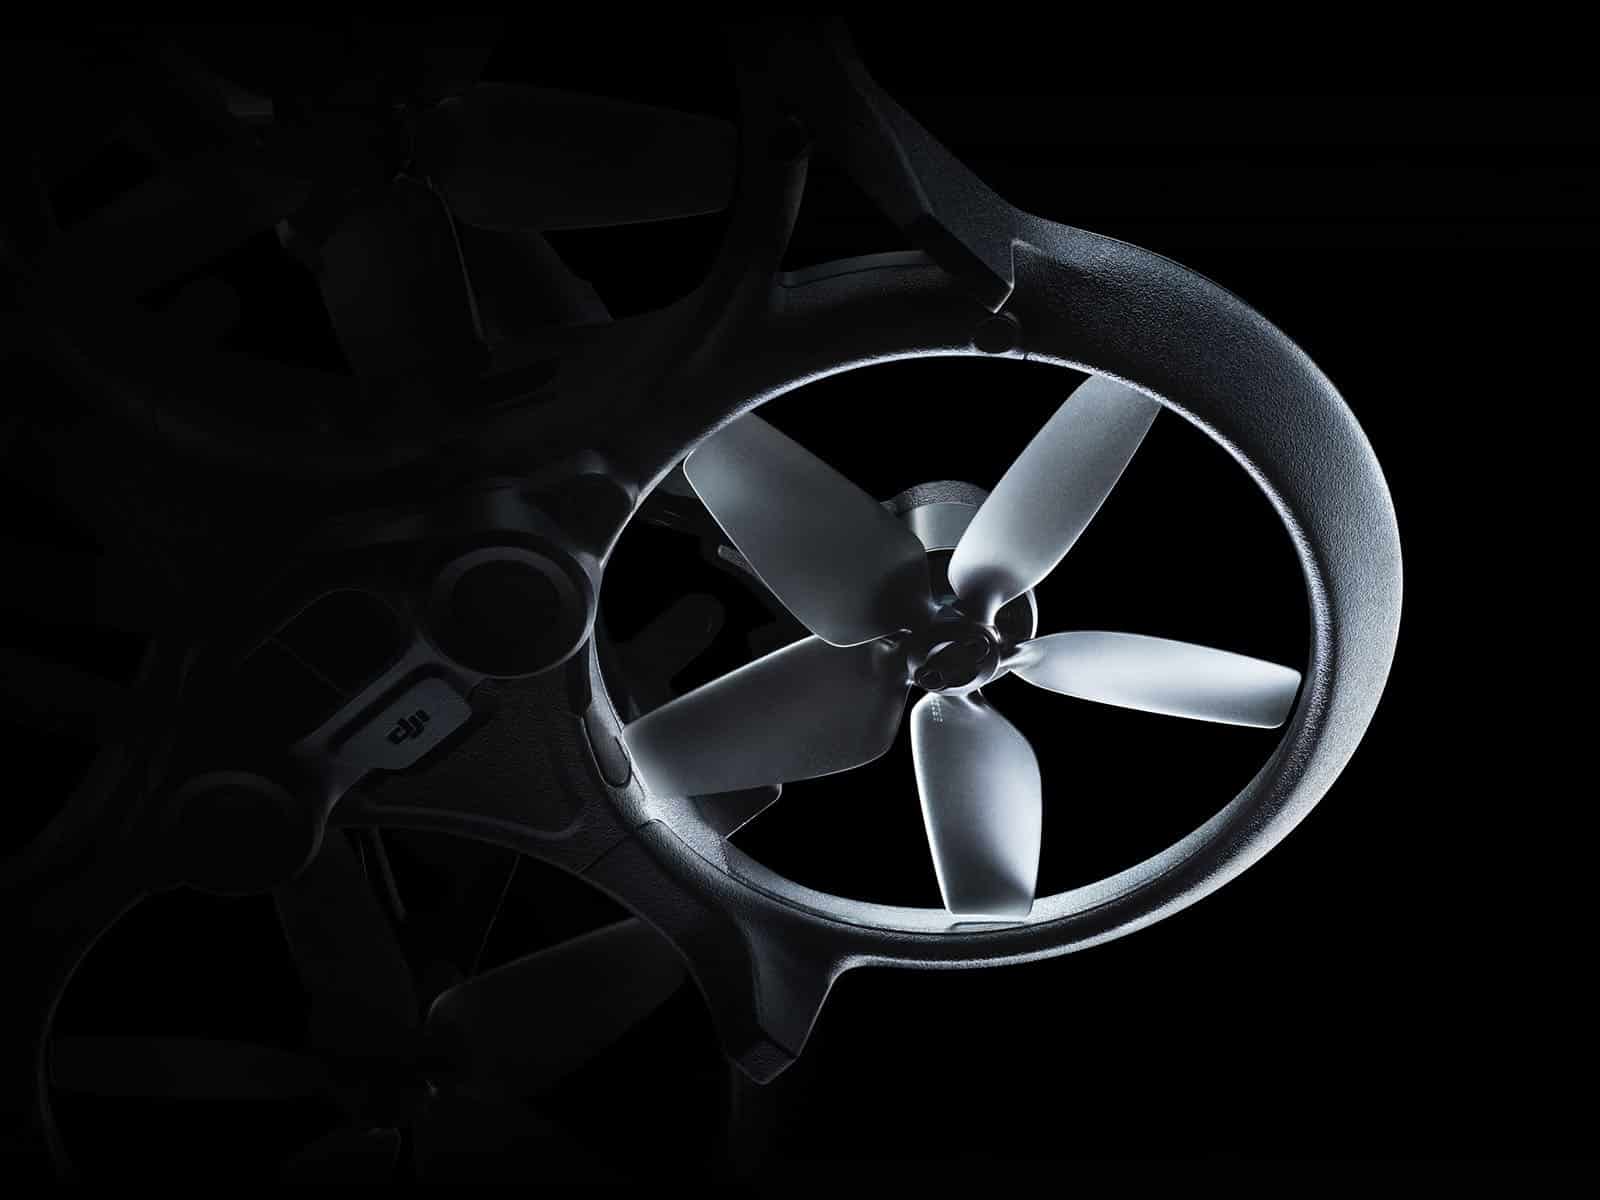 DJI ra mắt drone Avata là dòng FPV nhỏ gọn dành cho mọi người